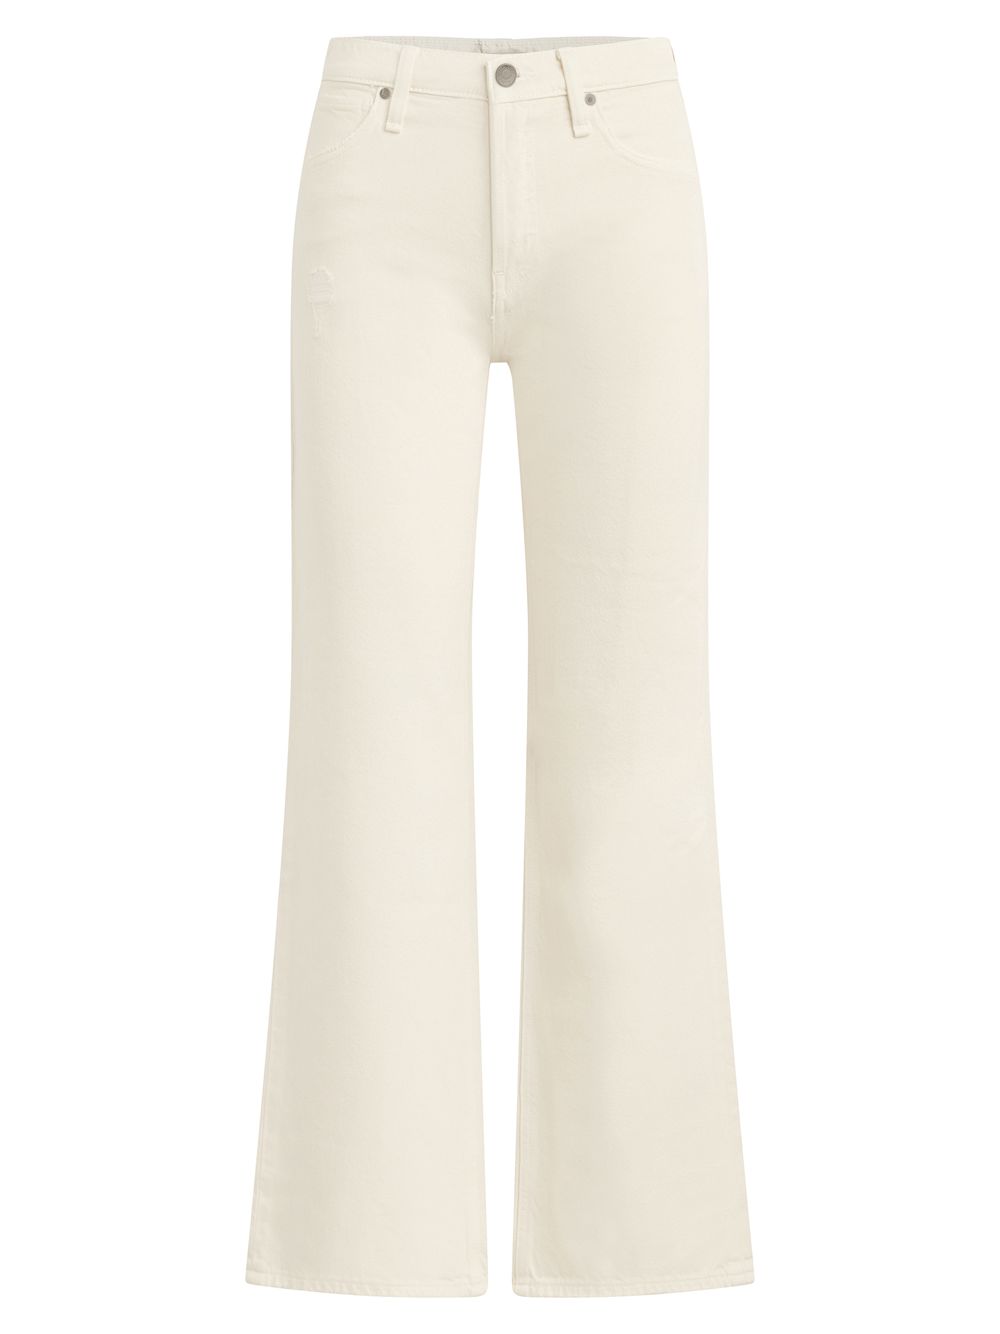 цена Широкие укороченные джинсы Rosie с высокой посадкой Hudson Jeans, экру